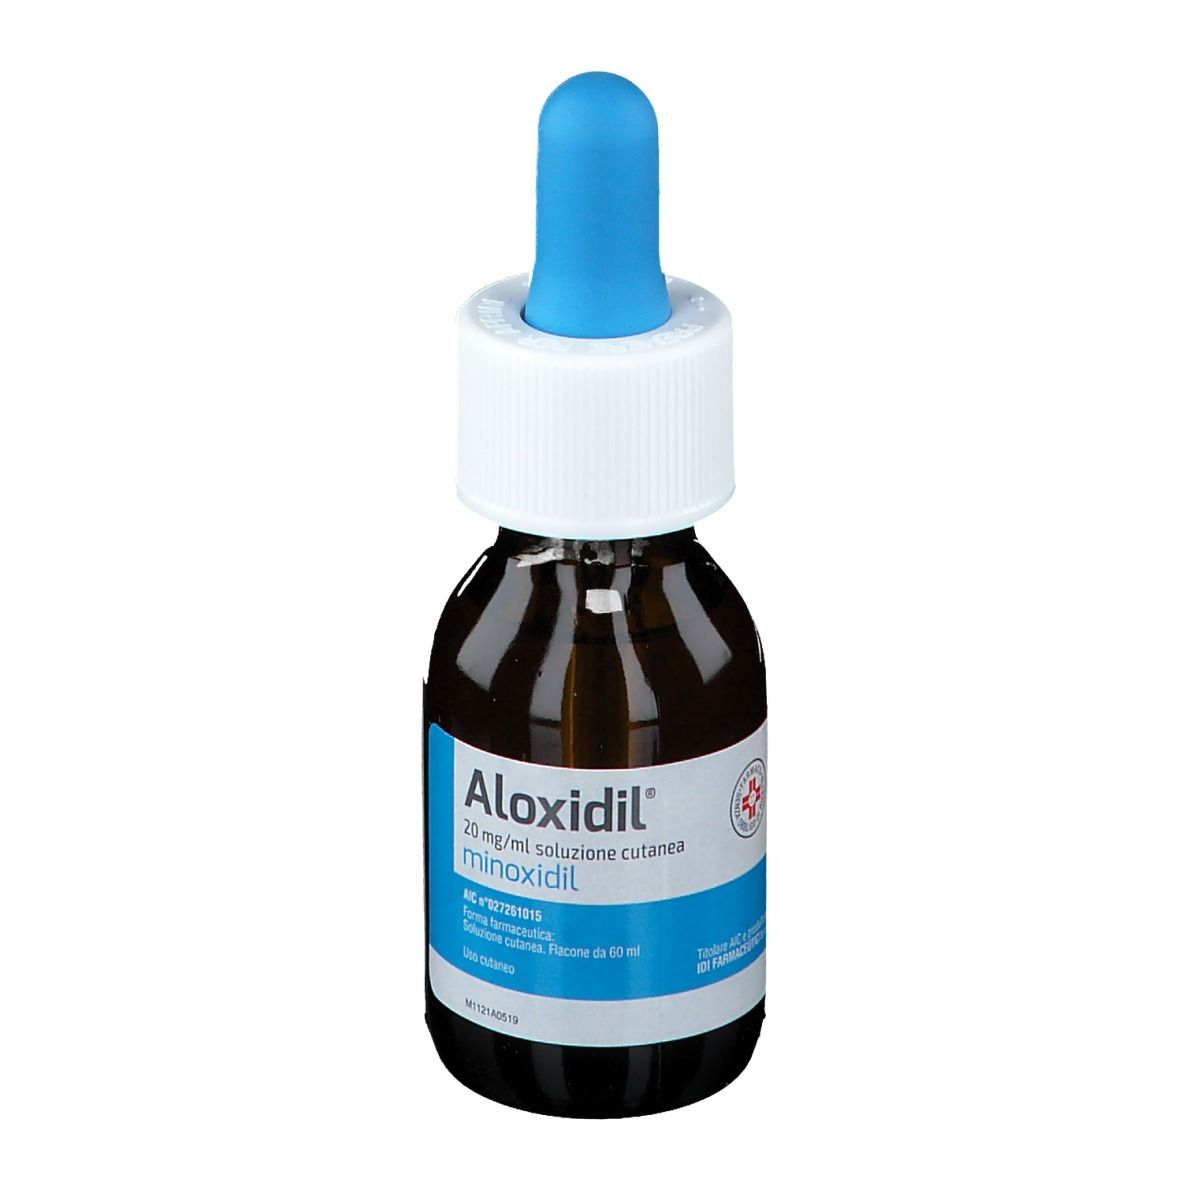 ALOXIDIL® 2% Soluzione cutanea